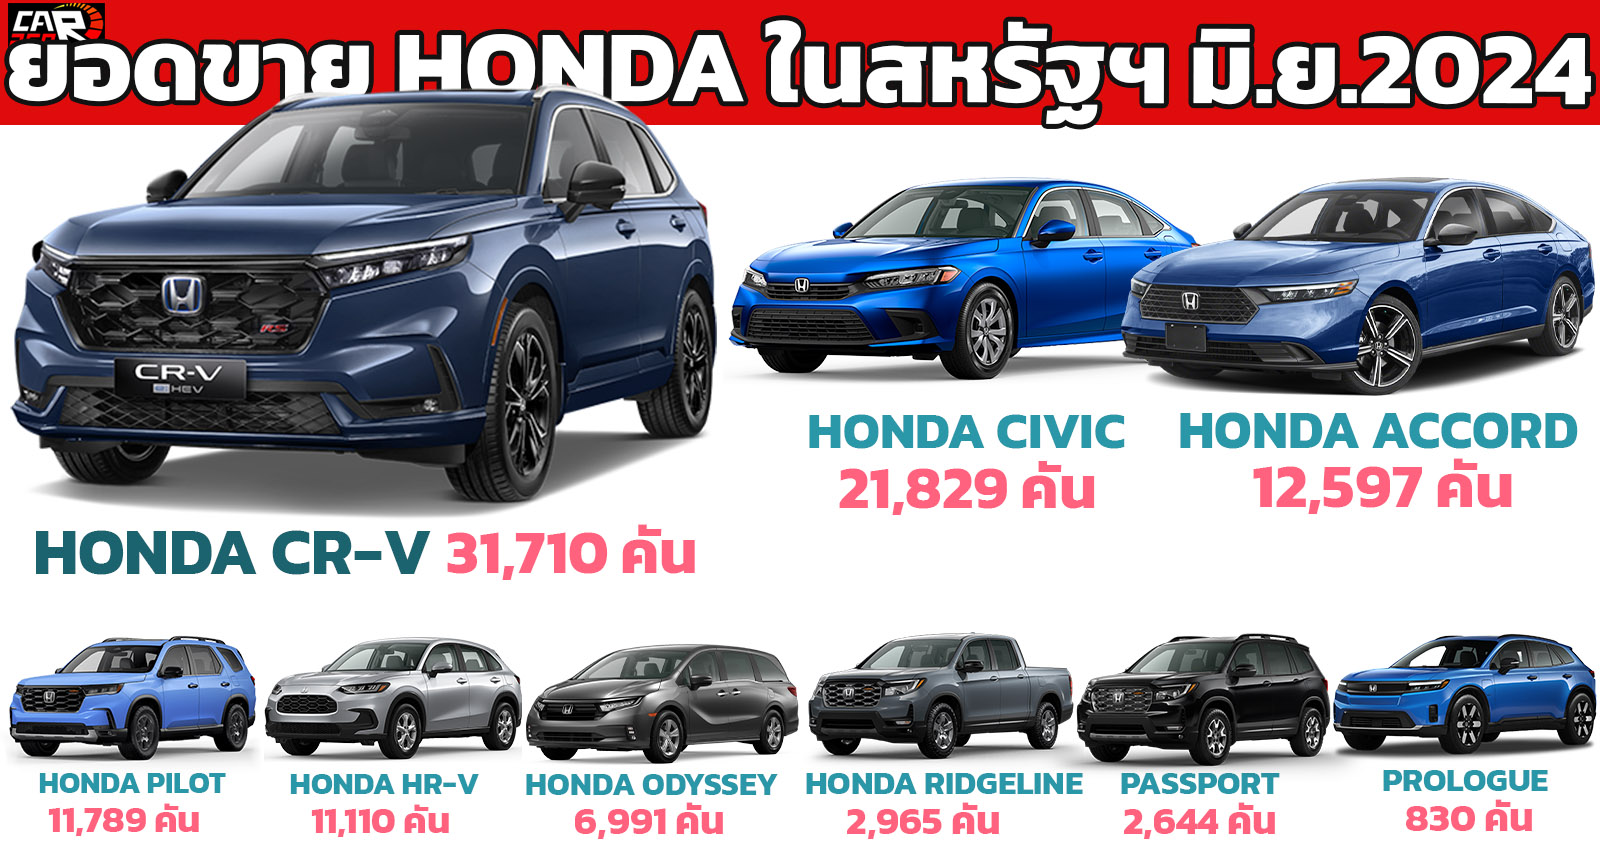 HONDA ขายรถยนต์ มิถุนายน 2024 สหรัฐอเมริการวม 102,385 คัน